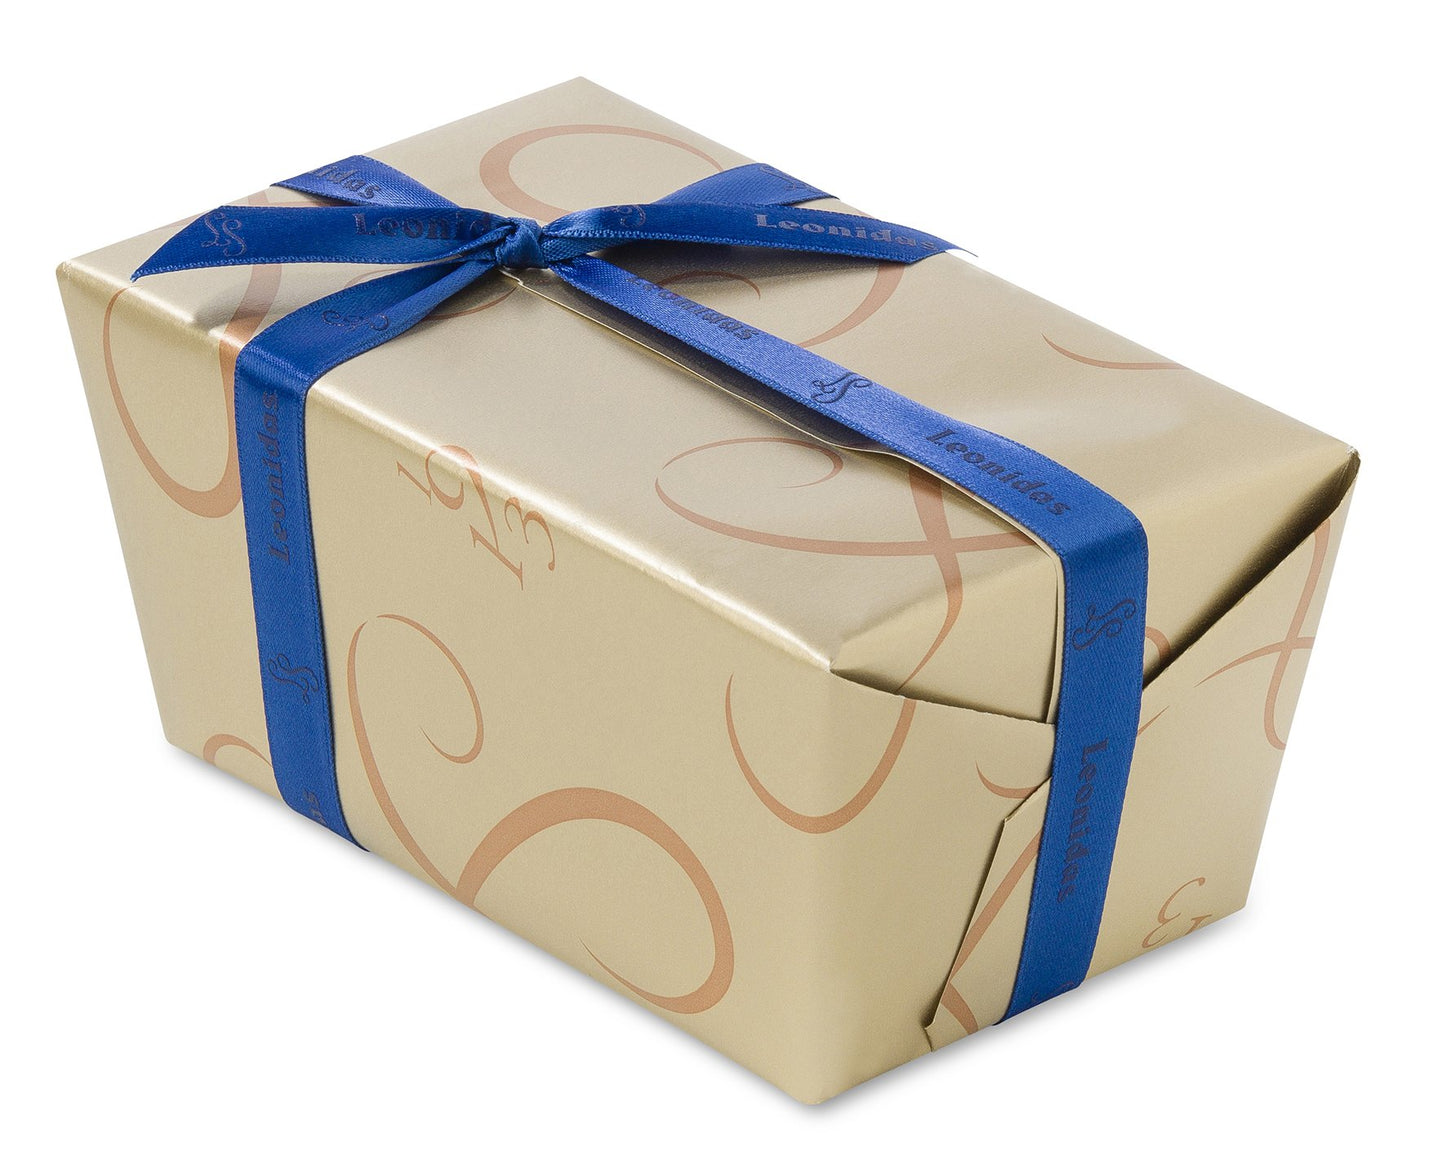 
                  
                    WHITE Chocolates Ballotin Box by weight - leonidasbrighton.co.uk - Leonidas Brighton
                  
                